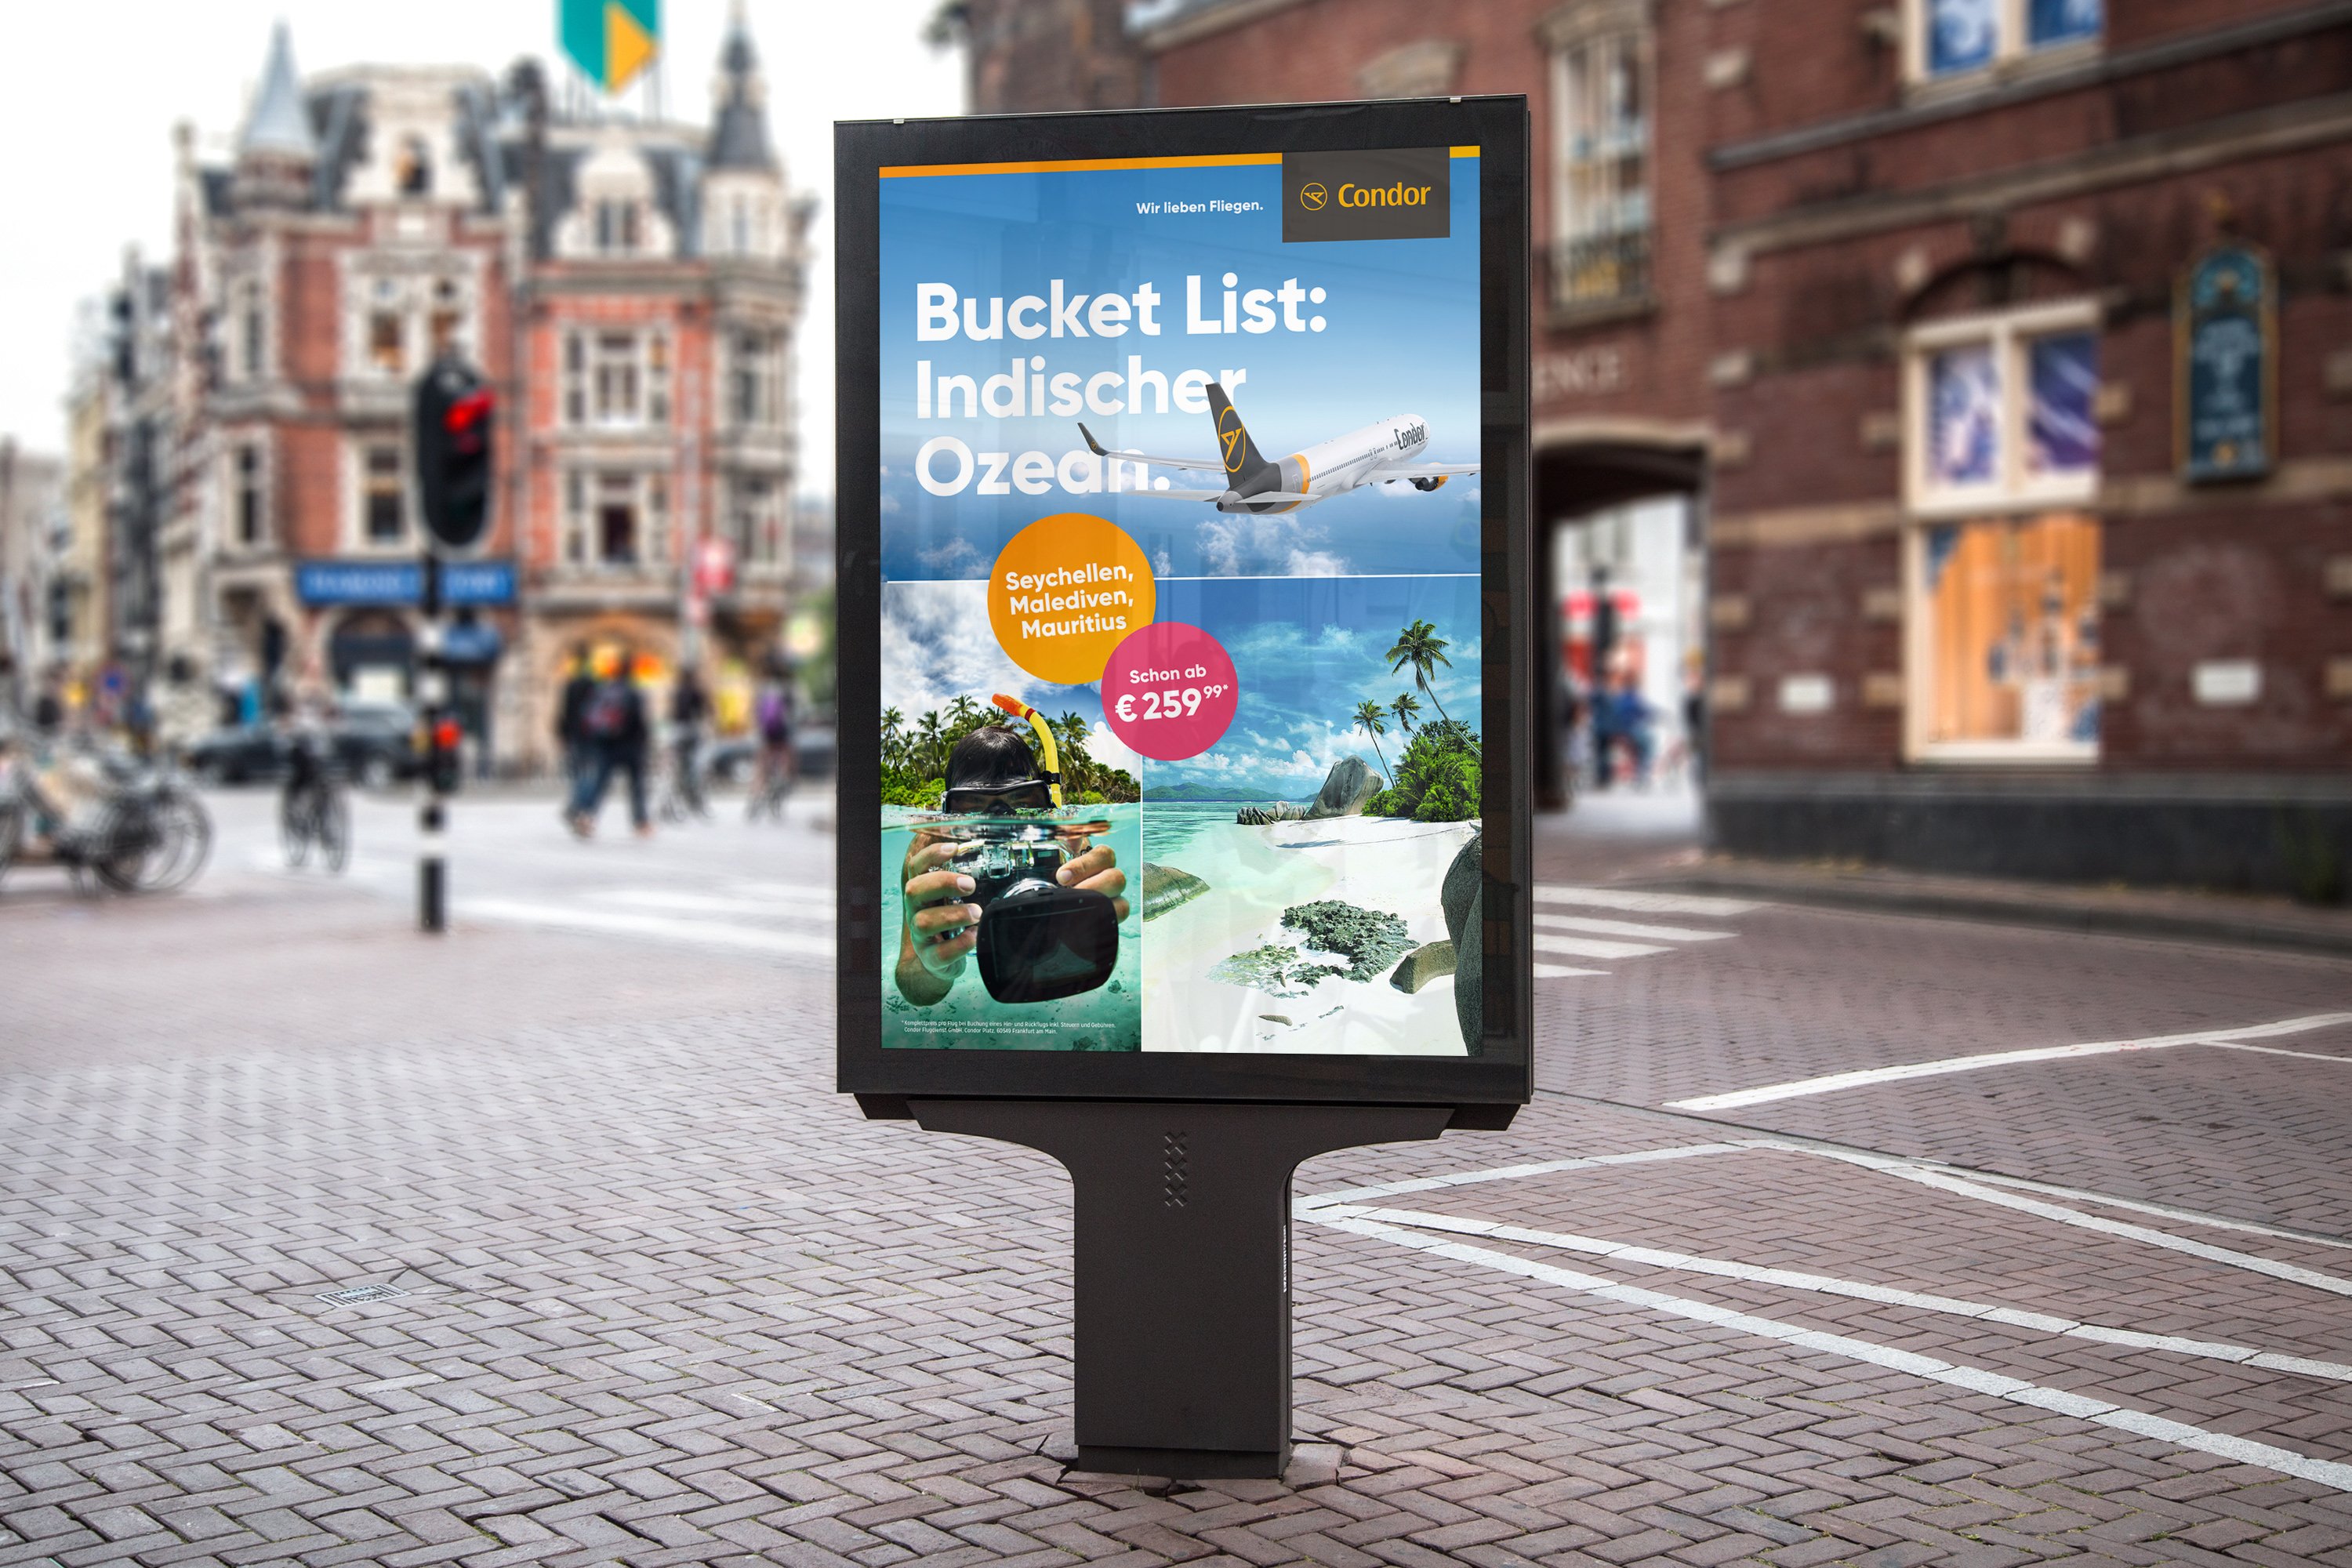 Excite Werbeagentur Condor City LIghts Plakat "Buckt LIst: Indischer Ozean." in Innenstadt